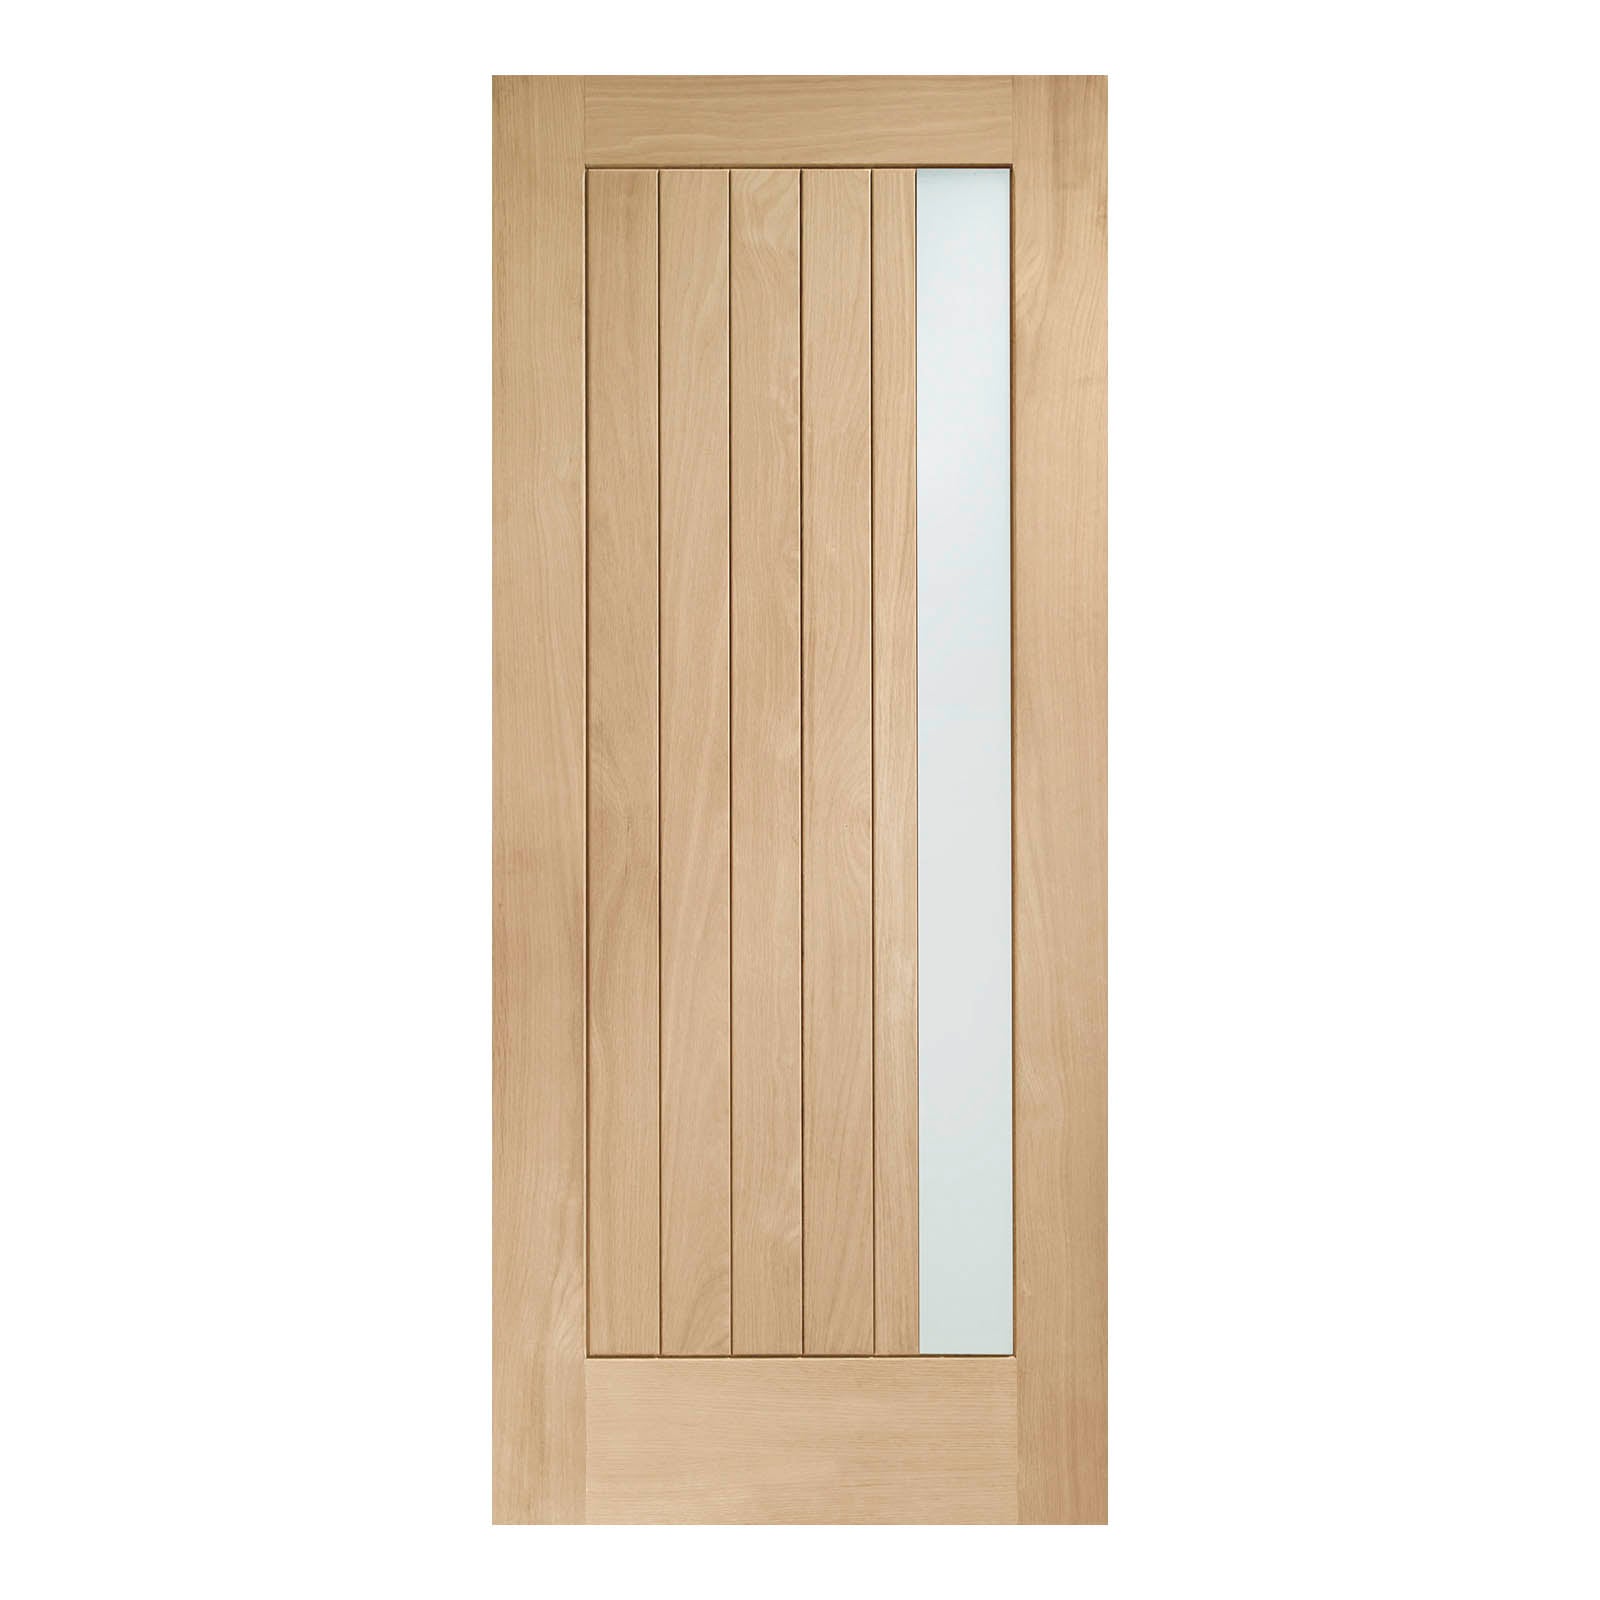 External Oak Trieste M&T Door with Double Glazed Obscure Glass